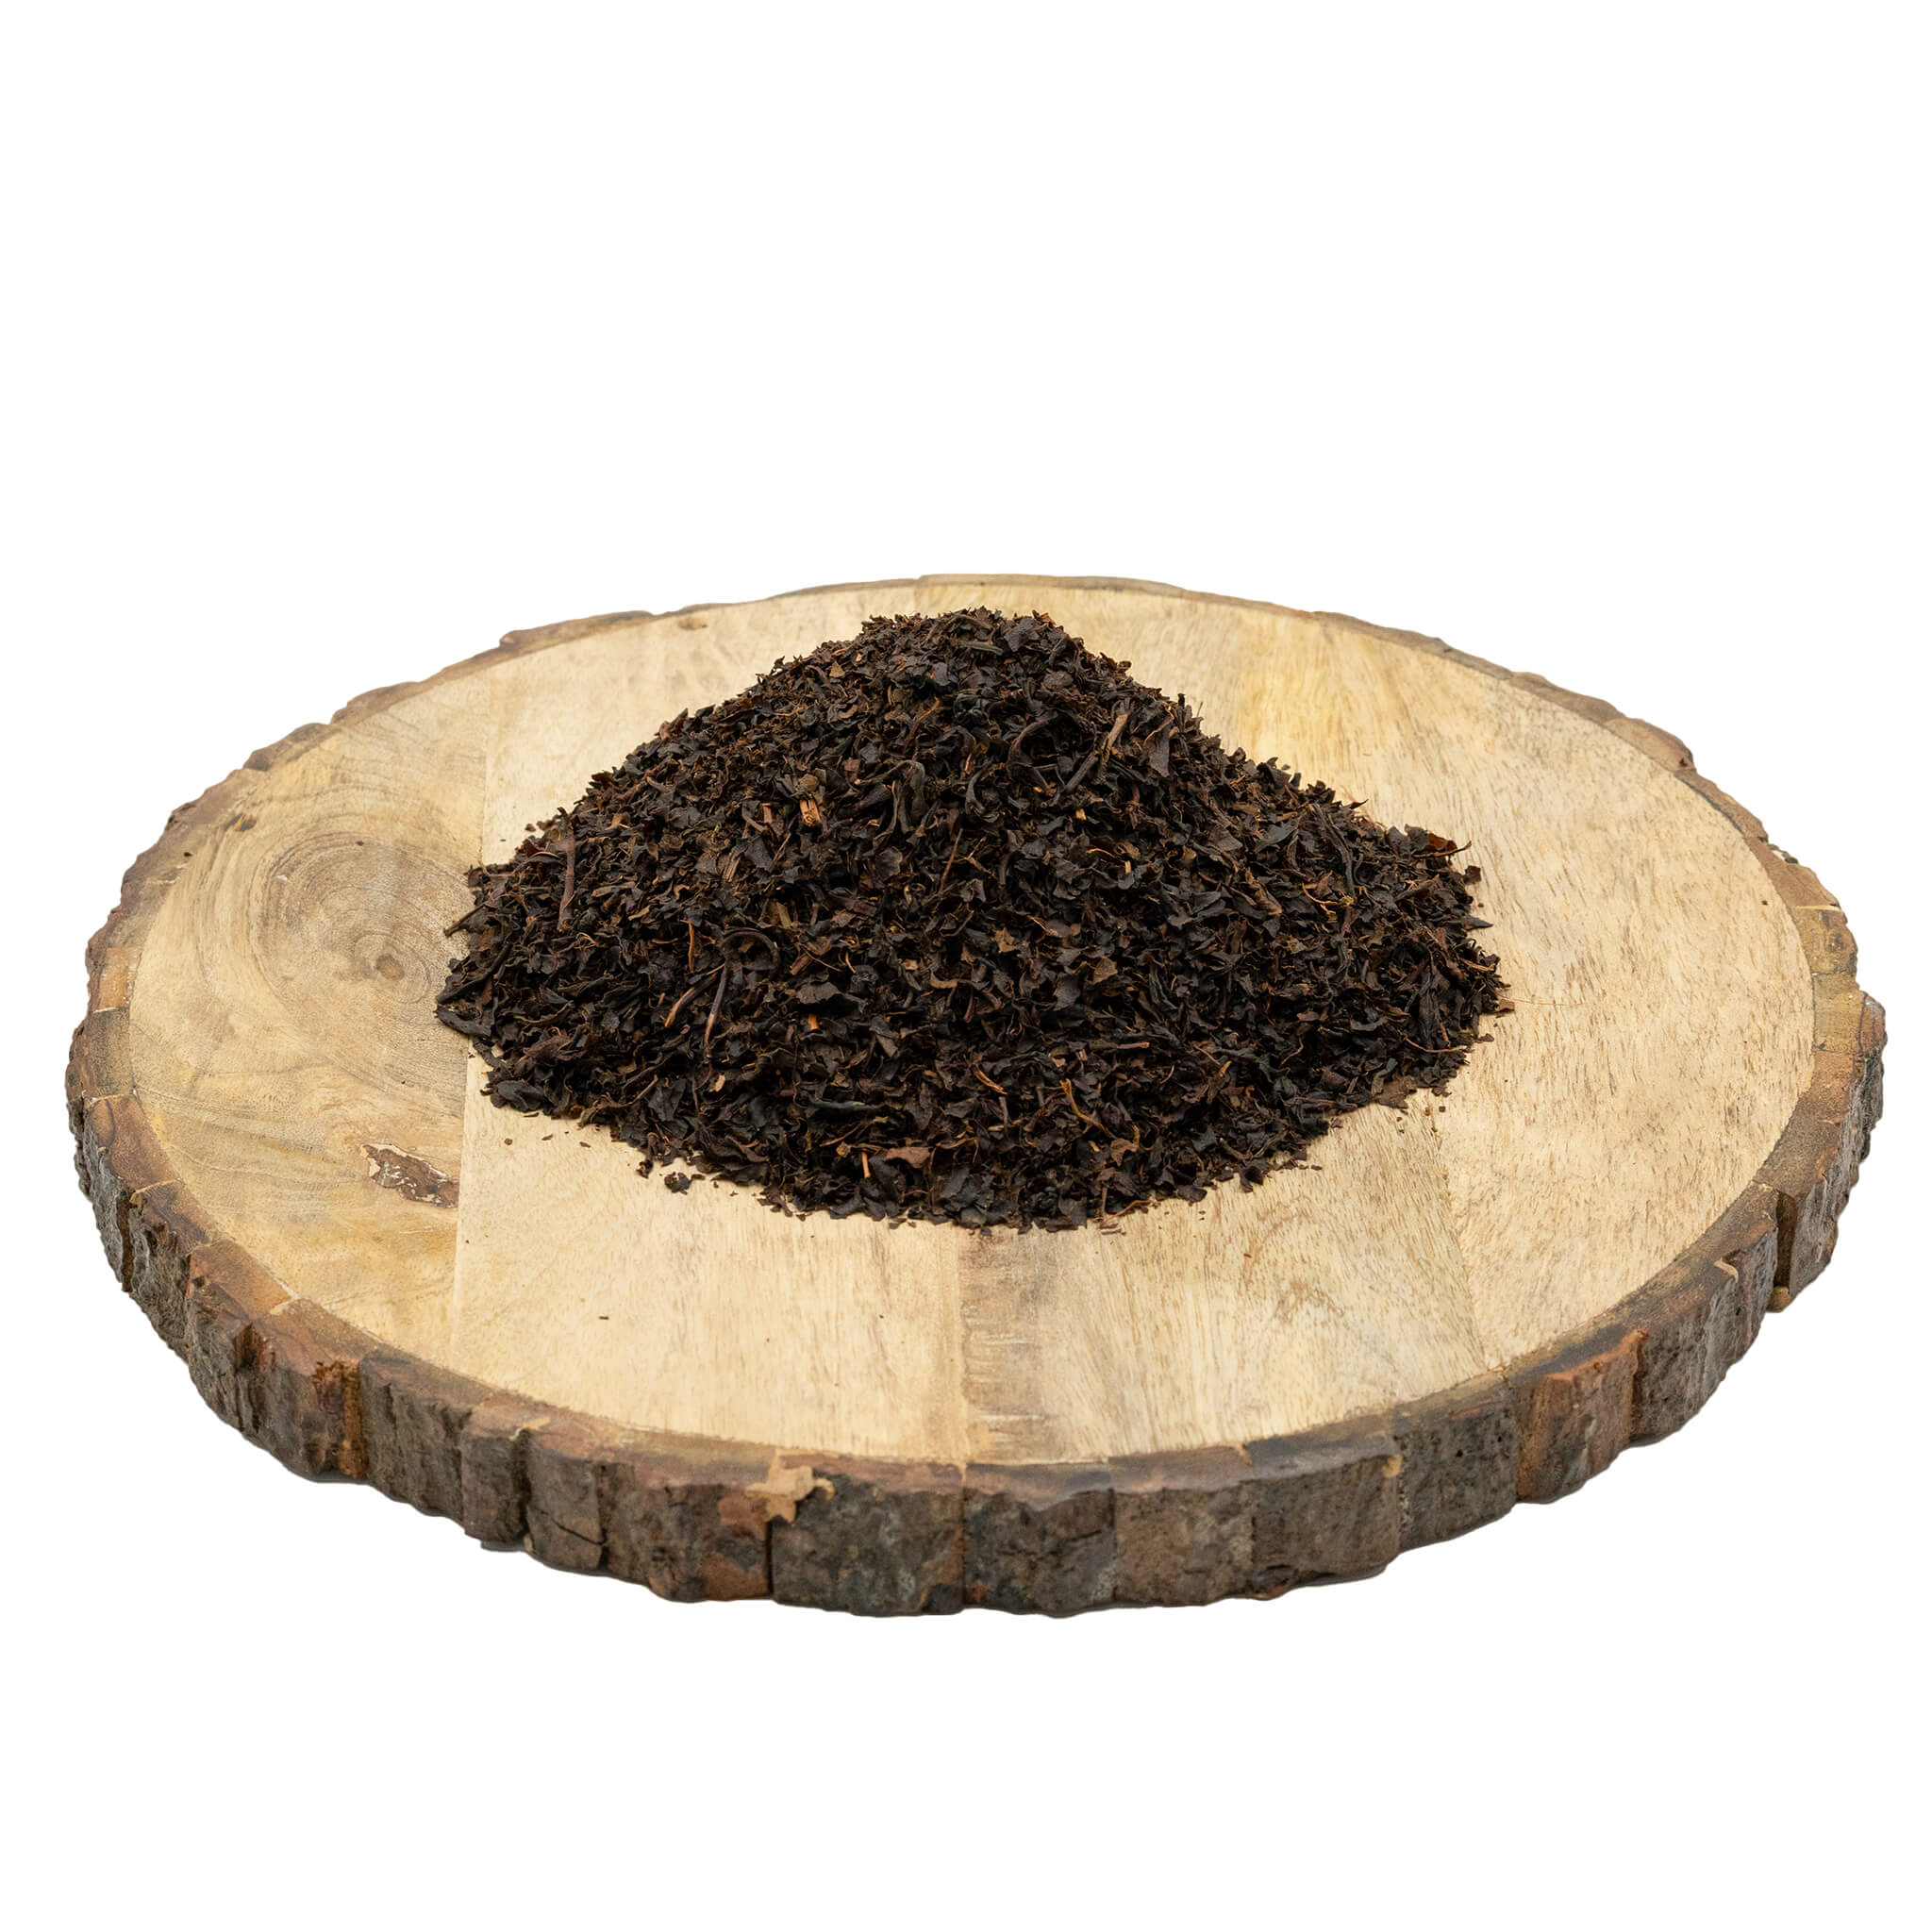 Černý čaj Assam sypaný, 600g